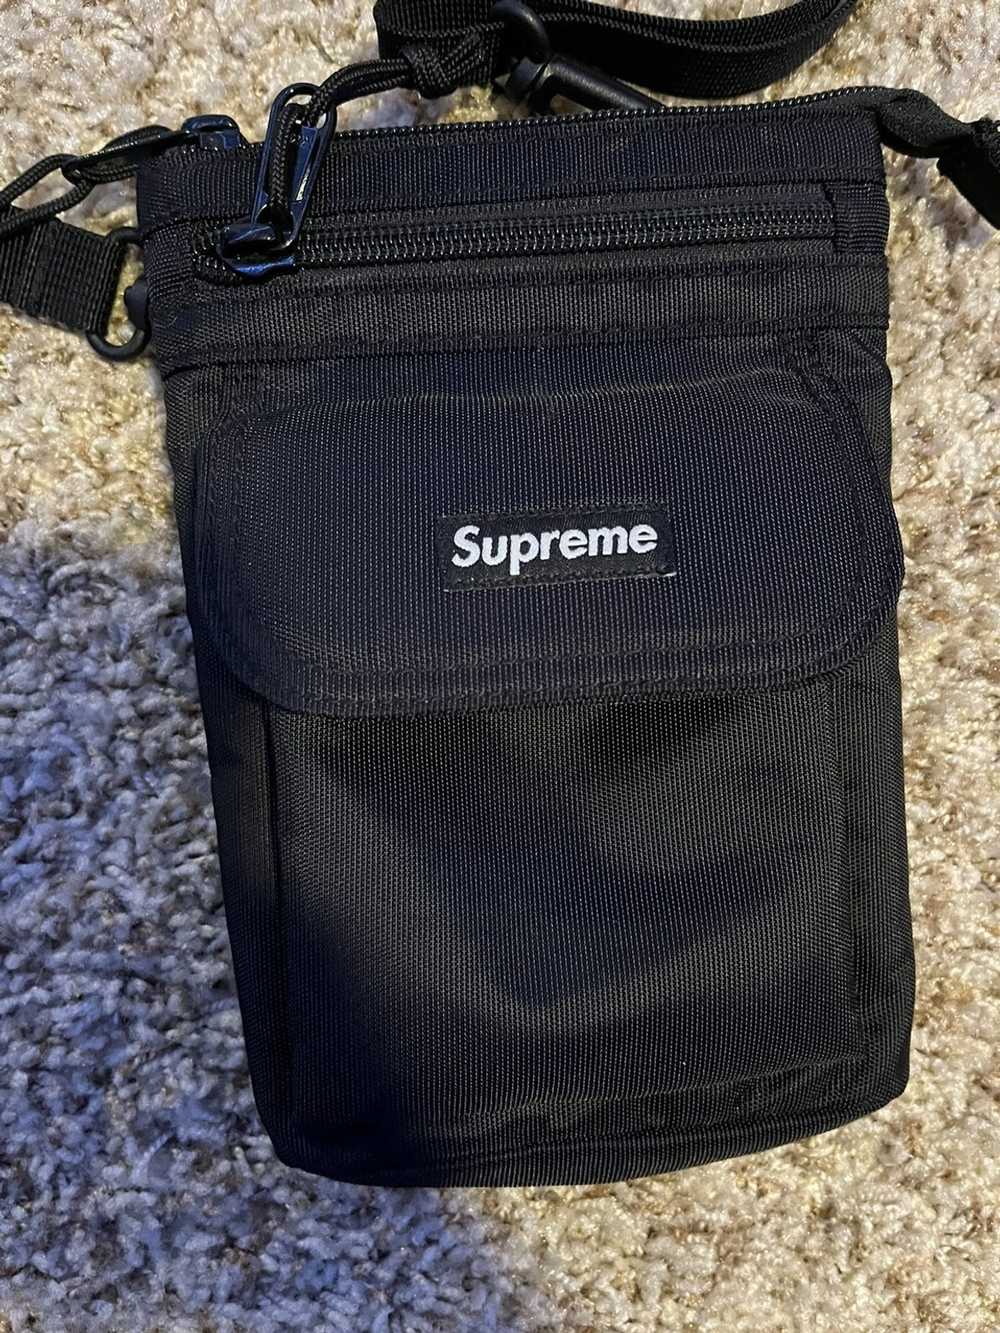 Supreme Supreme FW19 Shoulder Bag - image 2